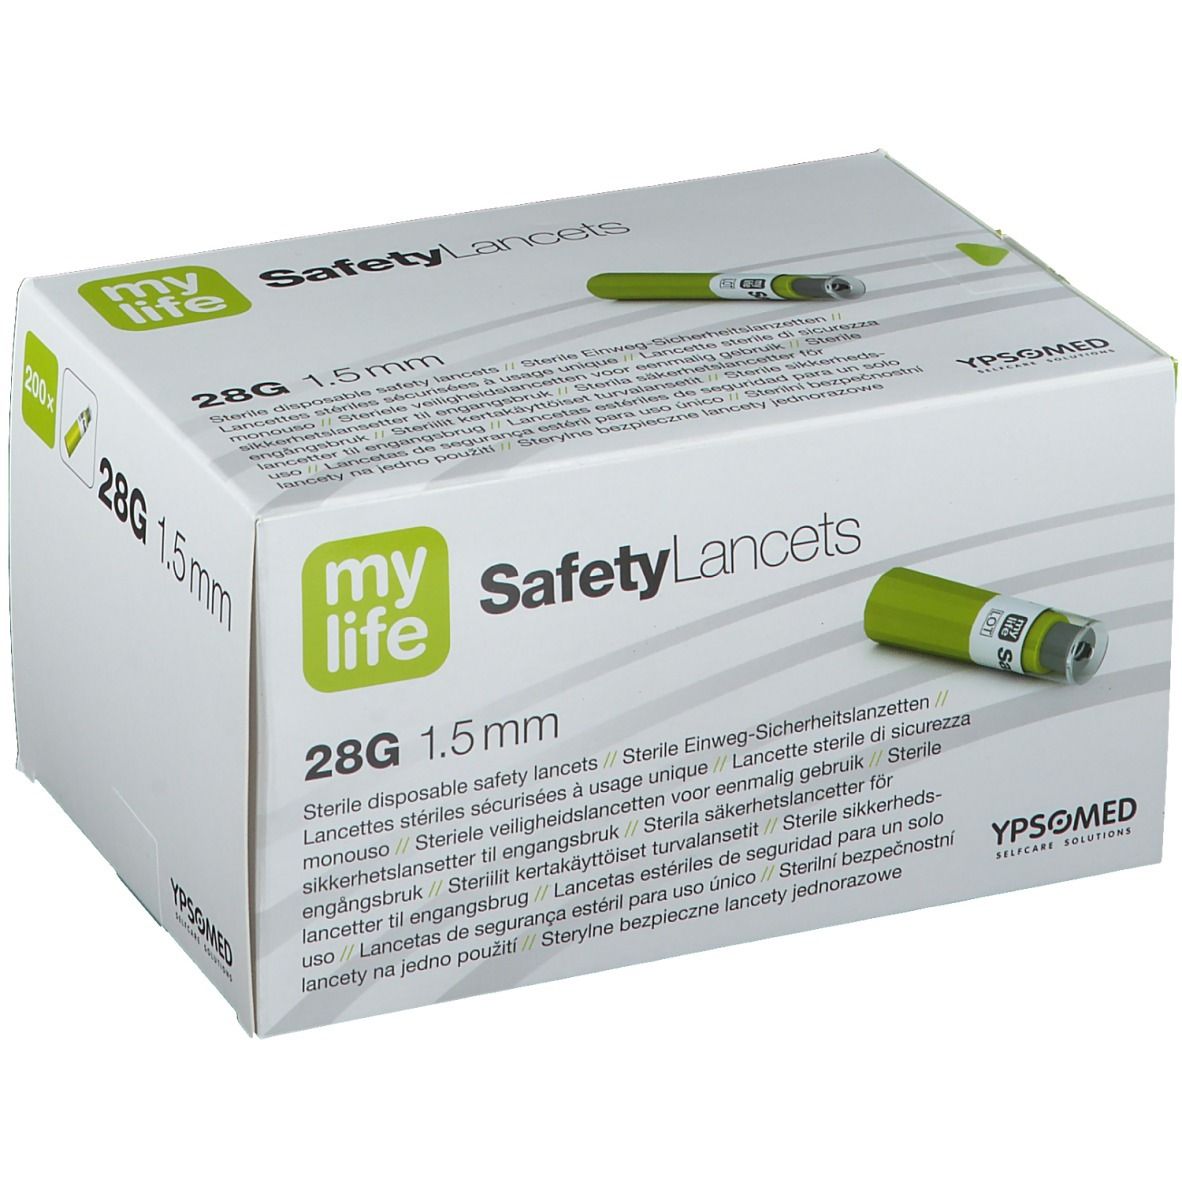 mylife SafetyLancets Comfort Sicherheitsnadeln 28G 1,5 mm 200 St